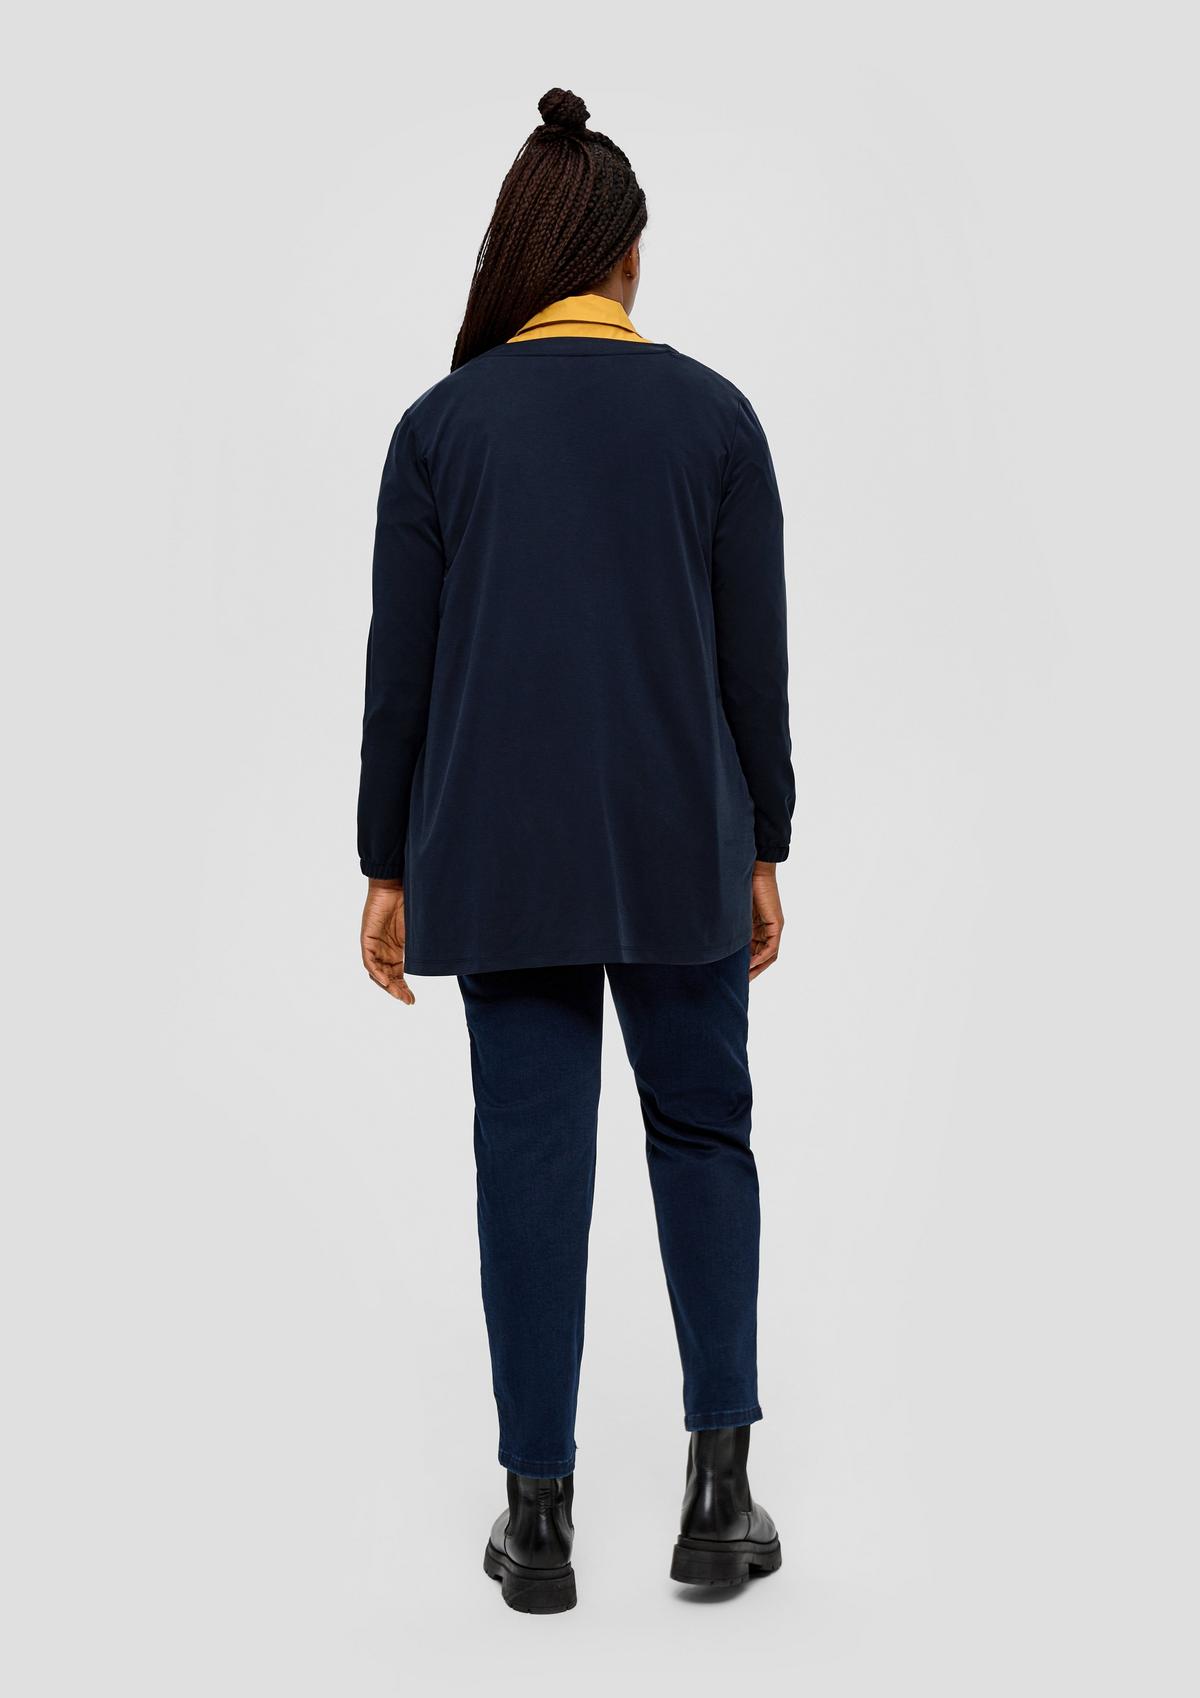 s.Oliver Shirt jacket in a modal blend